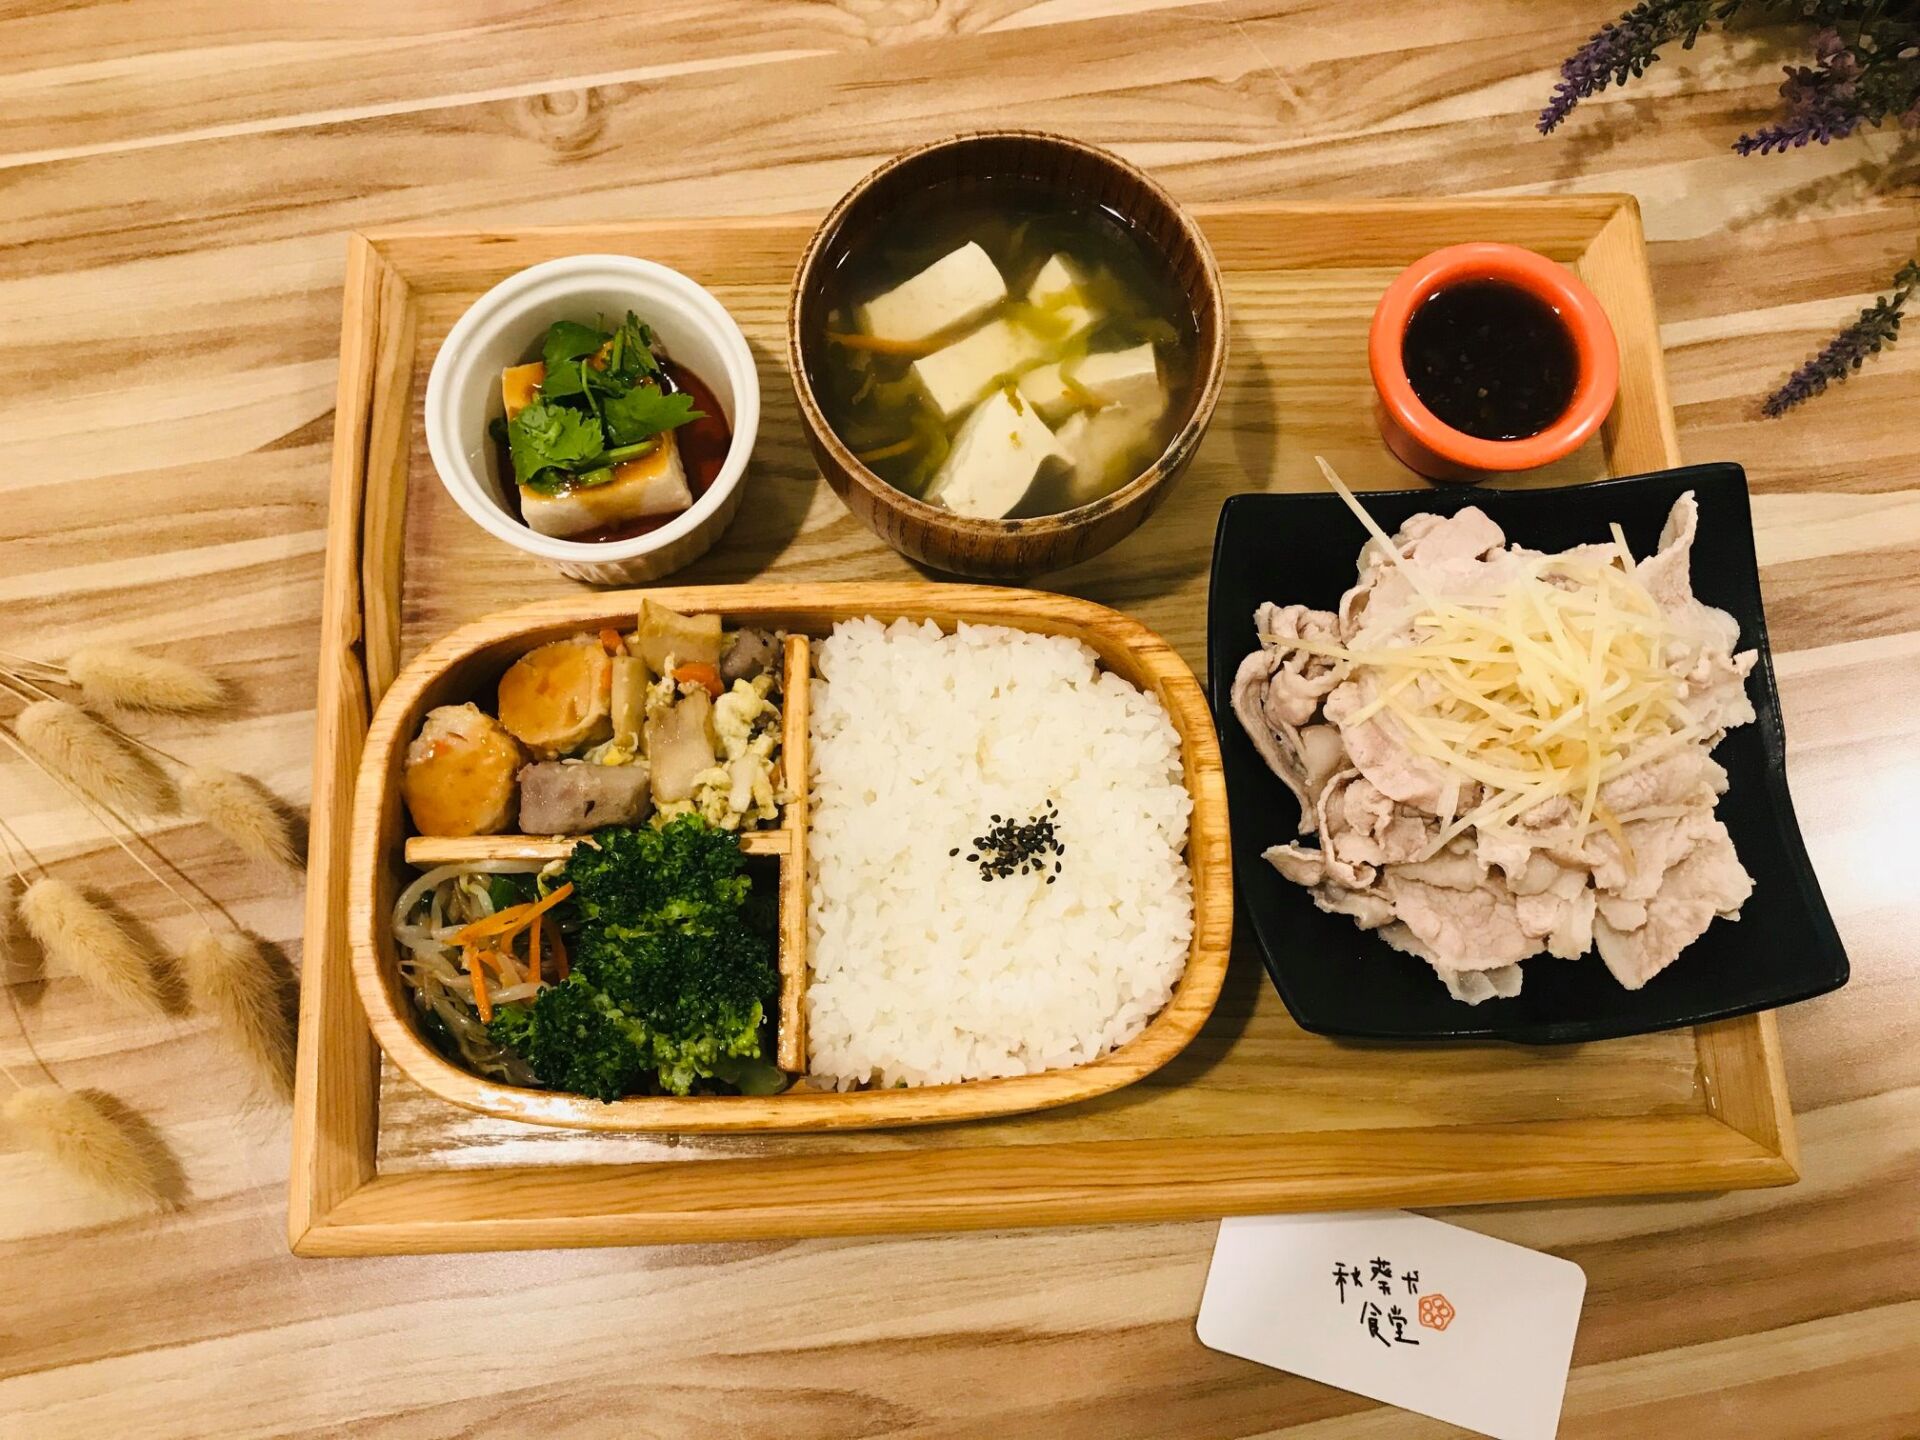 秋葵犬食堂 15 - Travel of Rice 小米遊記